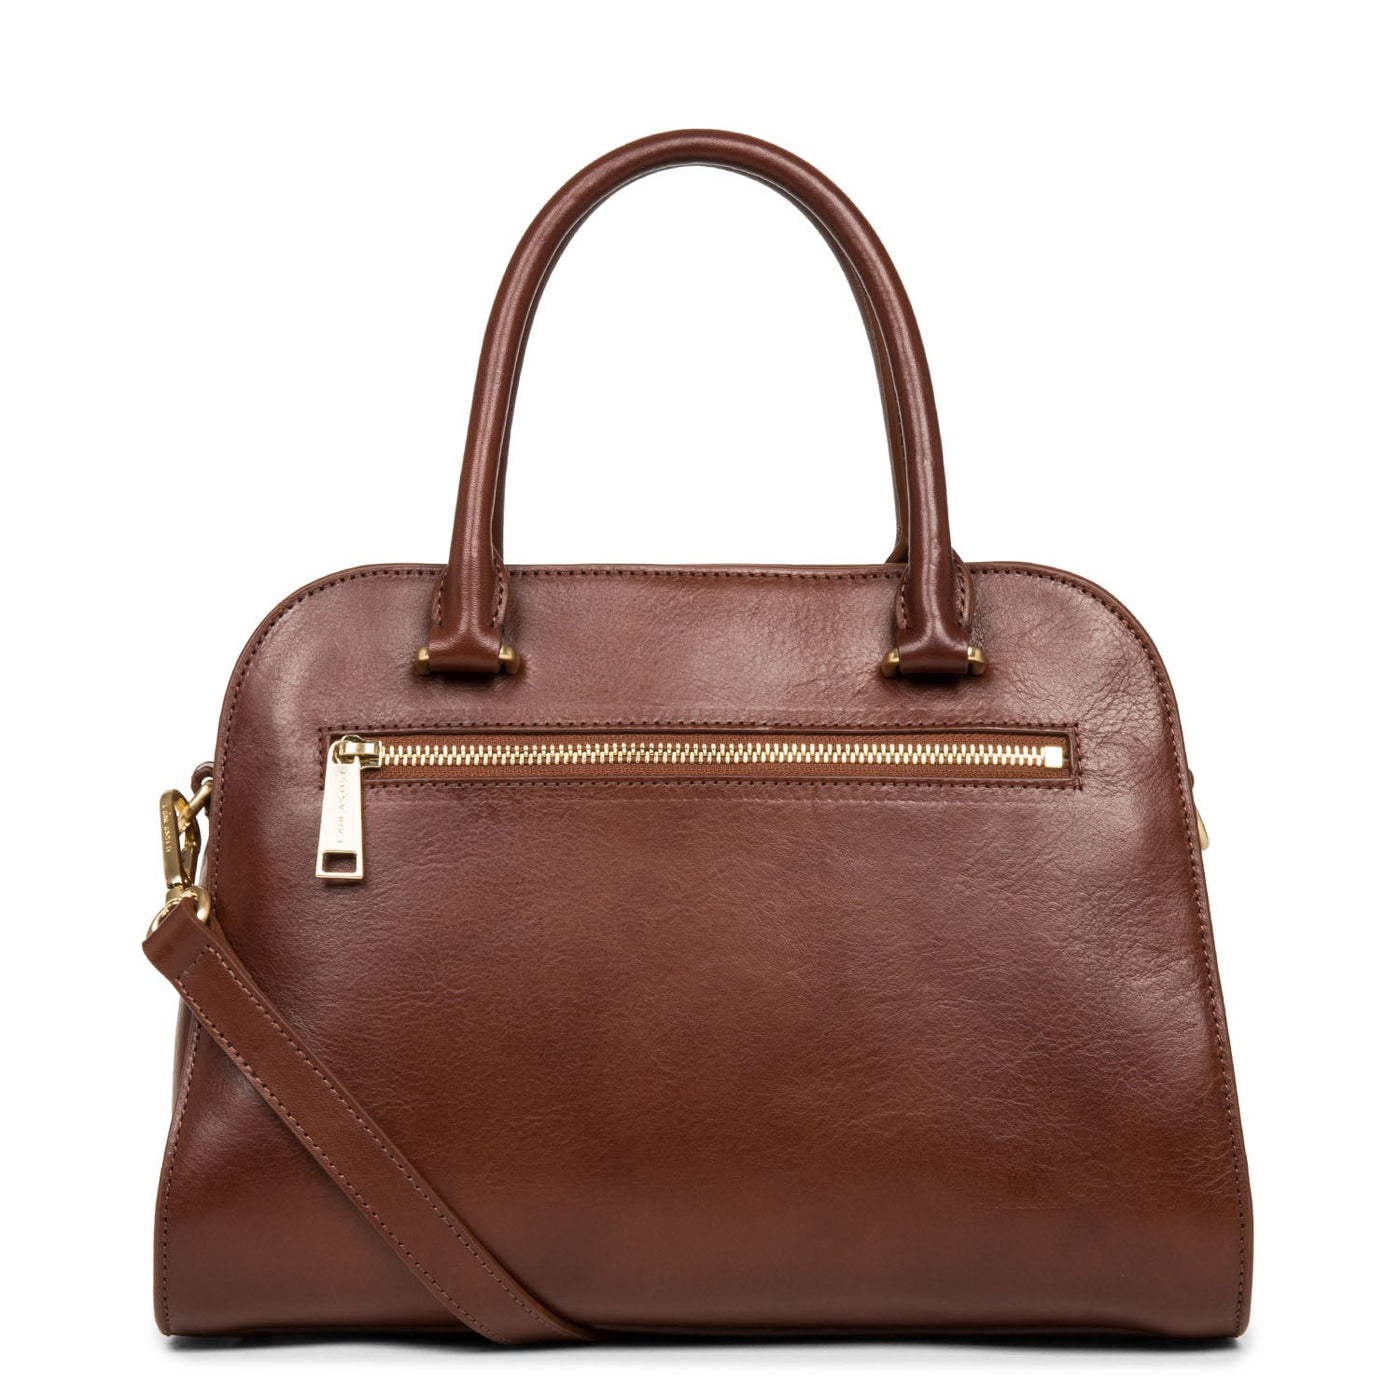 handbag - légende #couleur_cognac